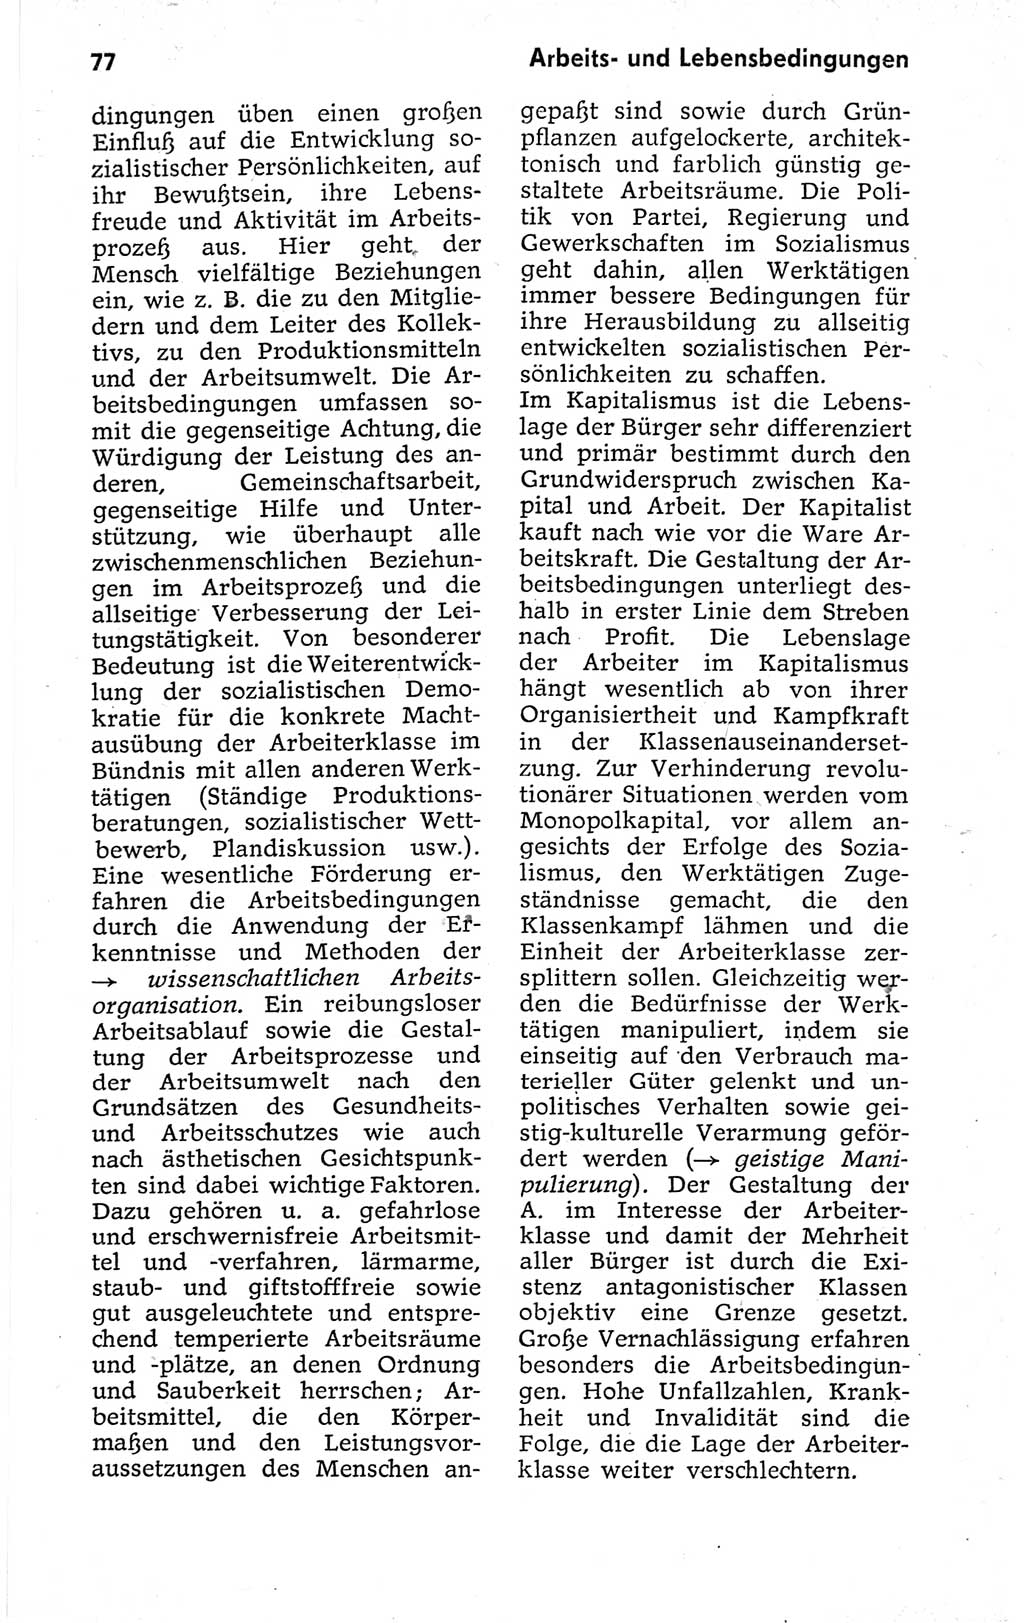 Kleines politisches Wörterbuch [Deutsche Demokratische Republik (DDR)] 1973, Seite 77 (Kl. pol. Wb. DDR 1973, S. 77)